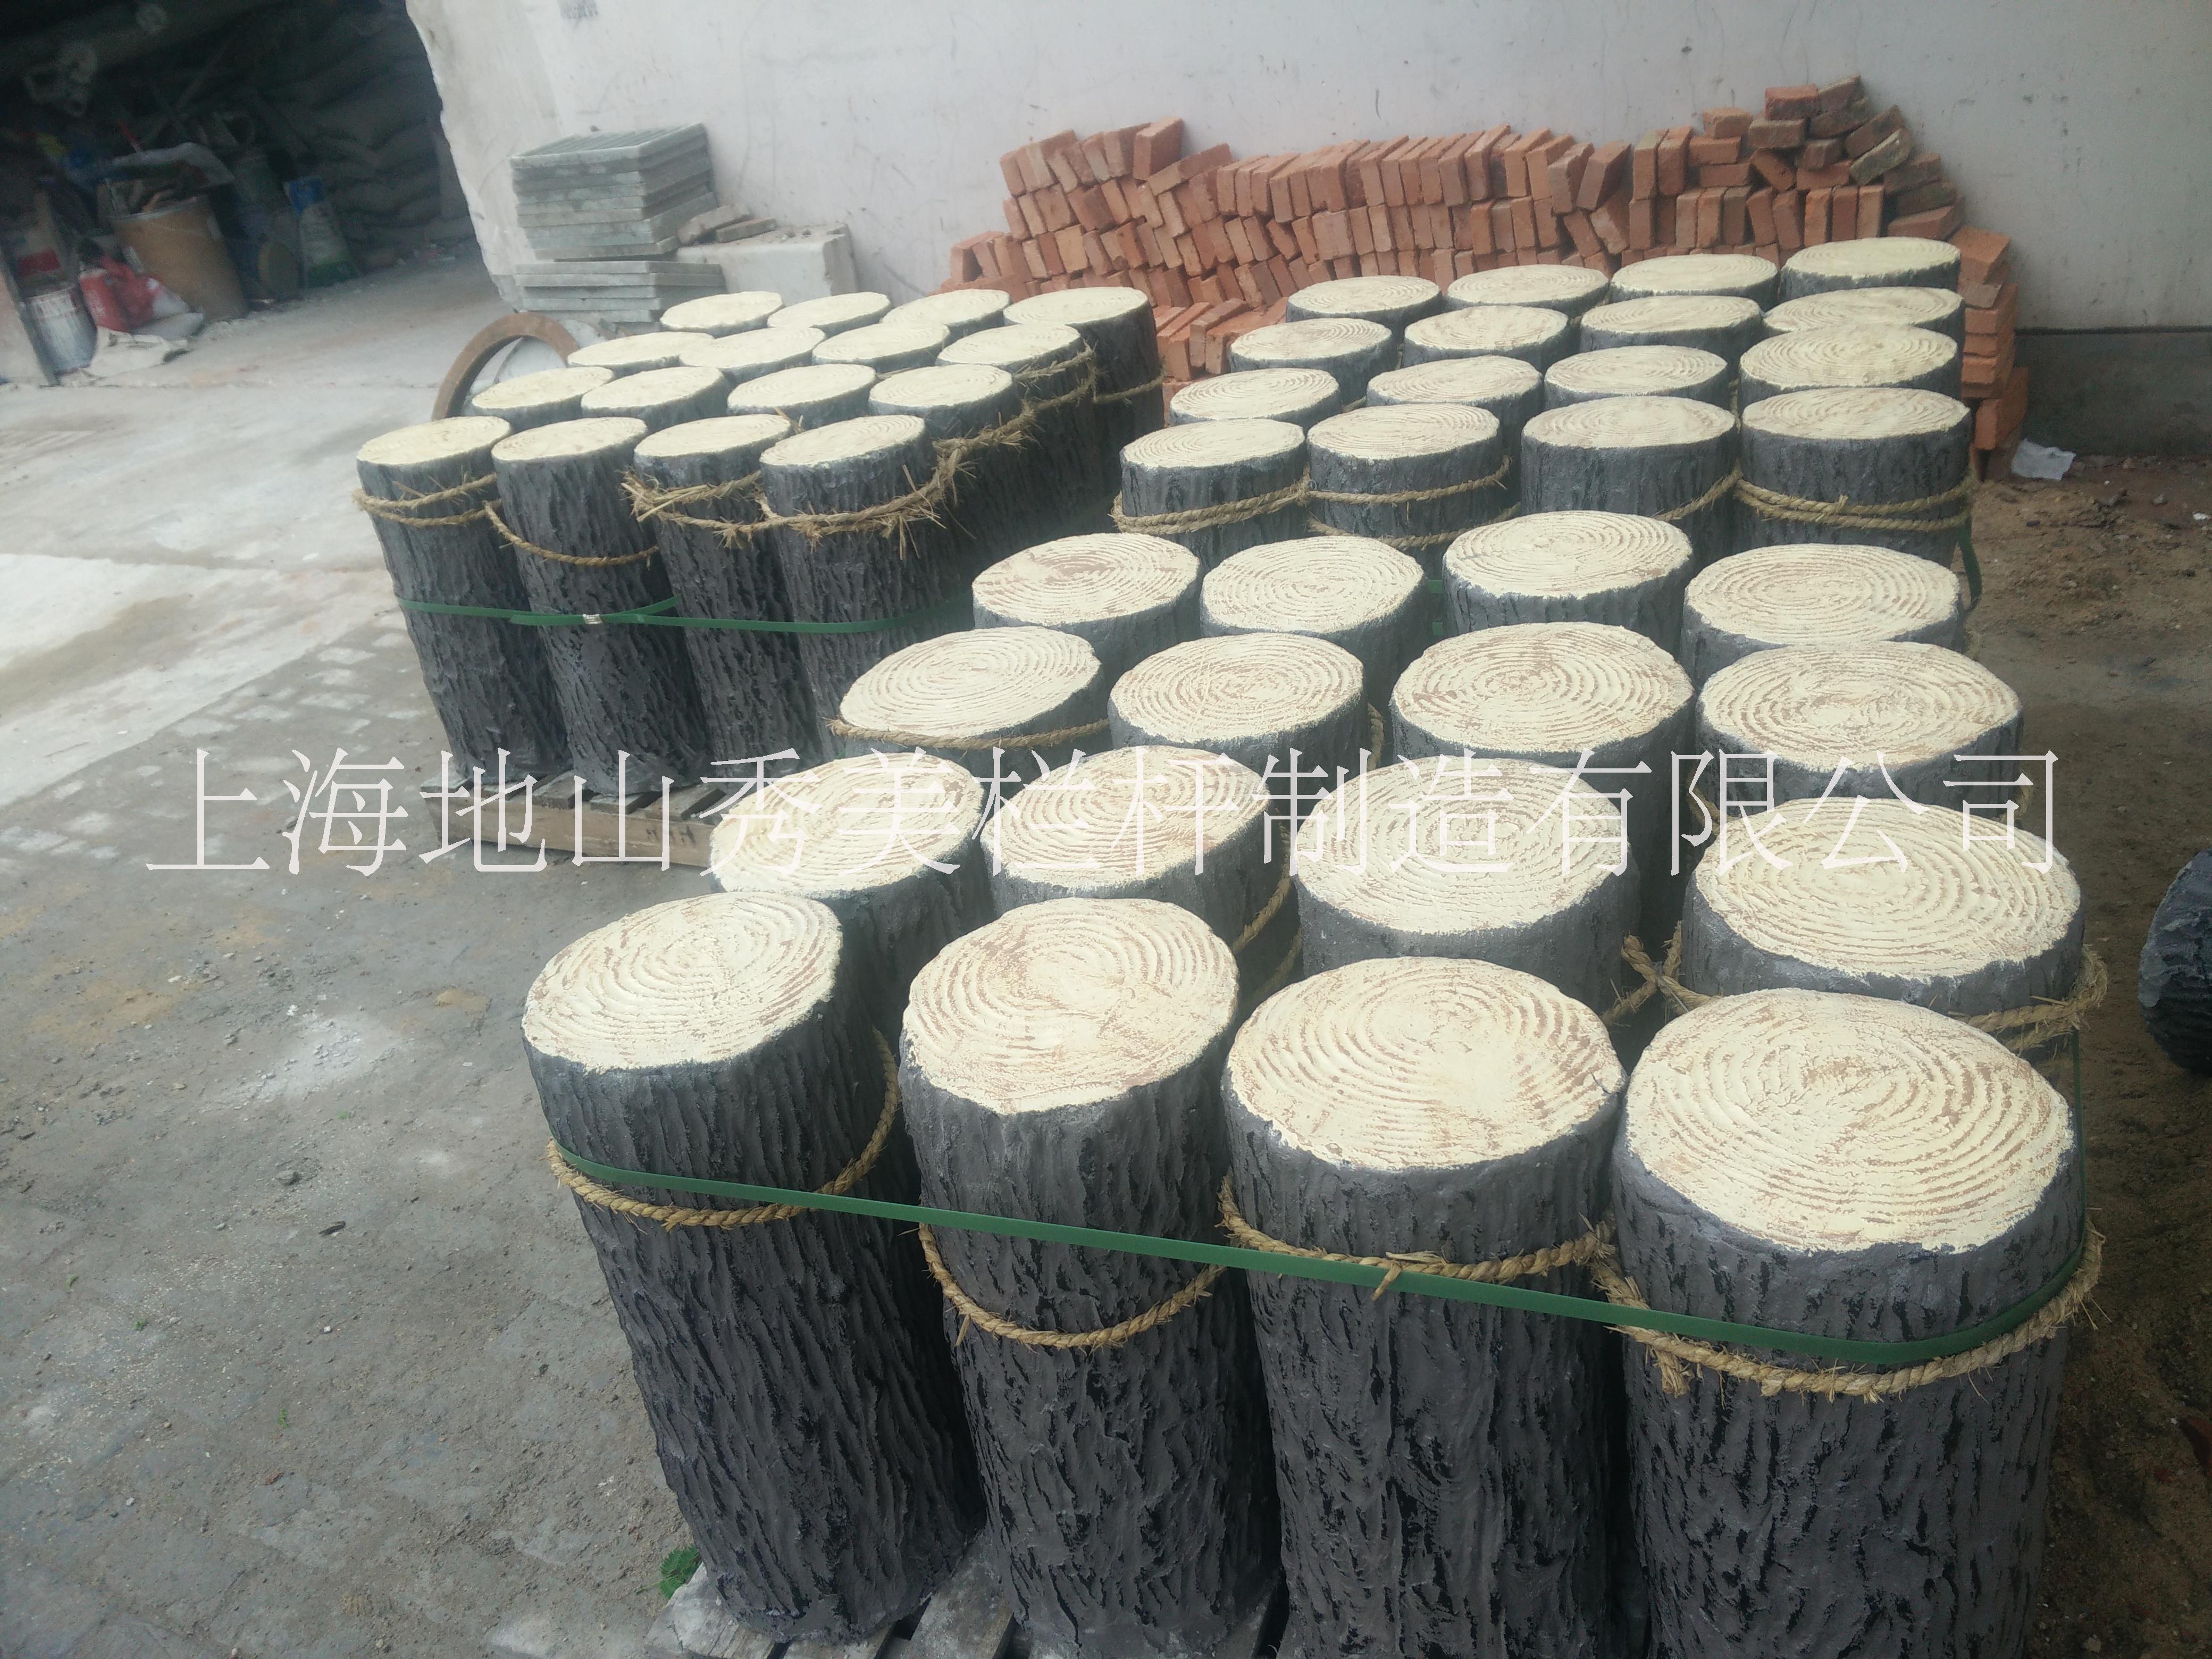 上海市仿木桩头厂家供应仿木桩头定做\上海仿木桩头批发\上海仿木桩头制作